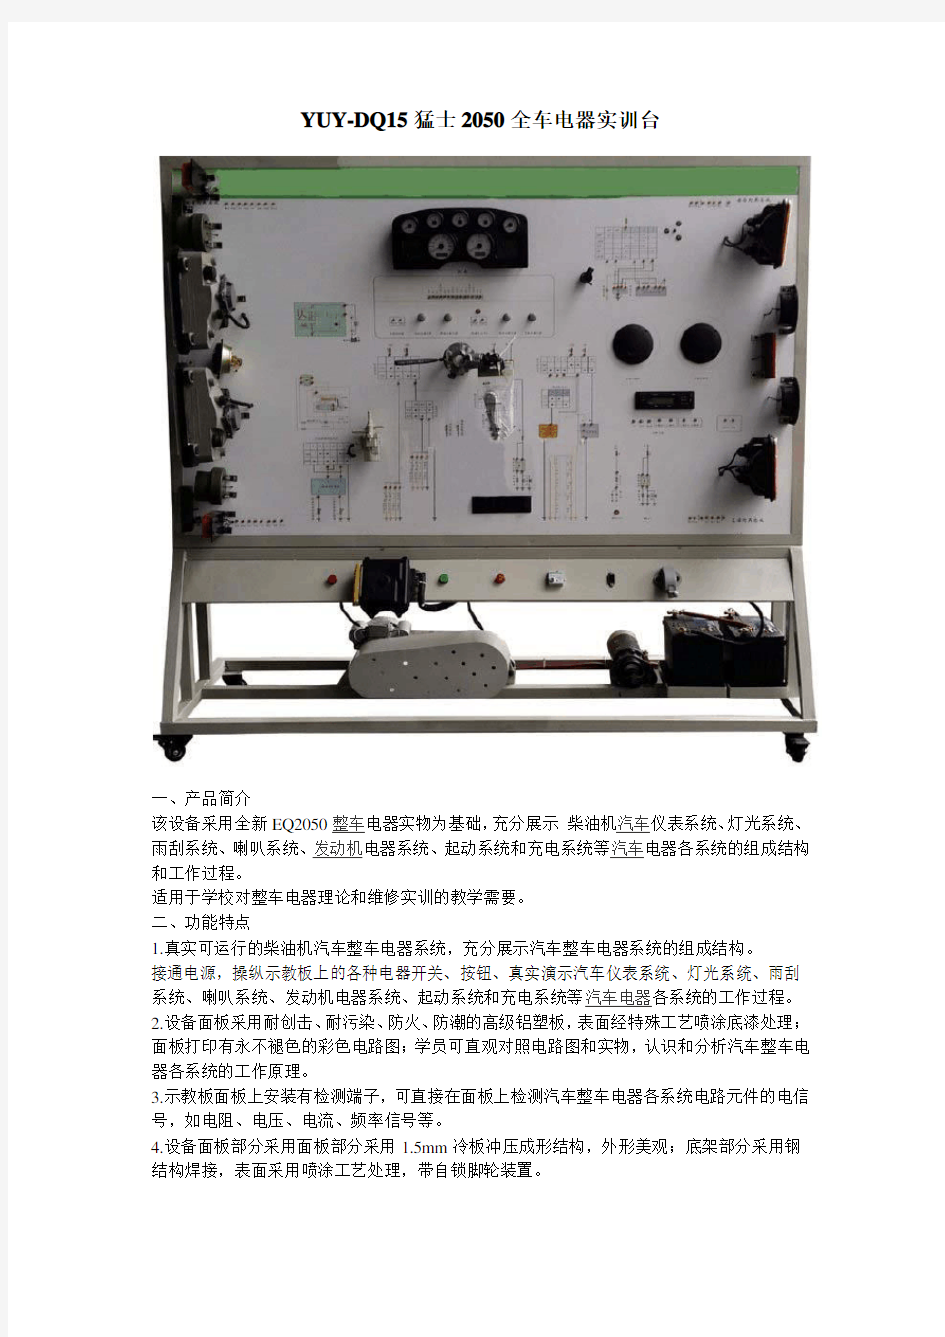 YUY-DQ15猛士2050全车电器实训台